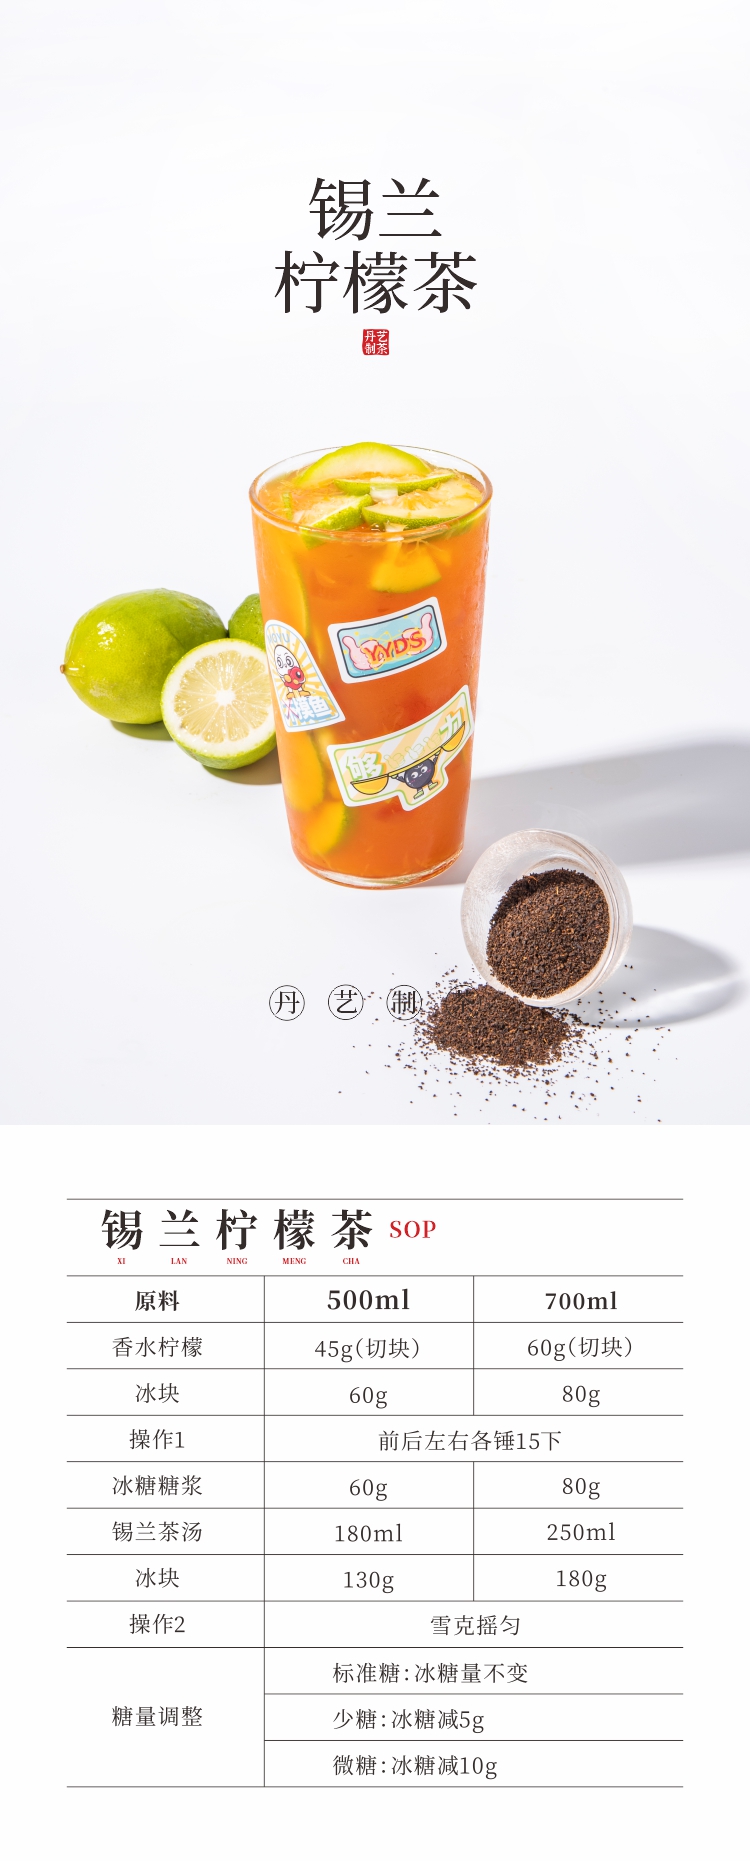 丹艺花香锡兰红茶250g